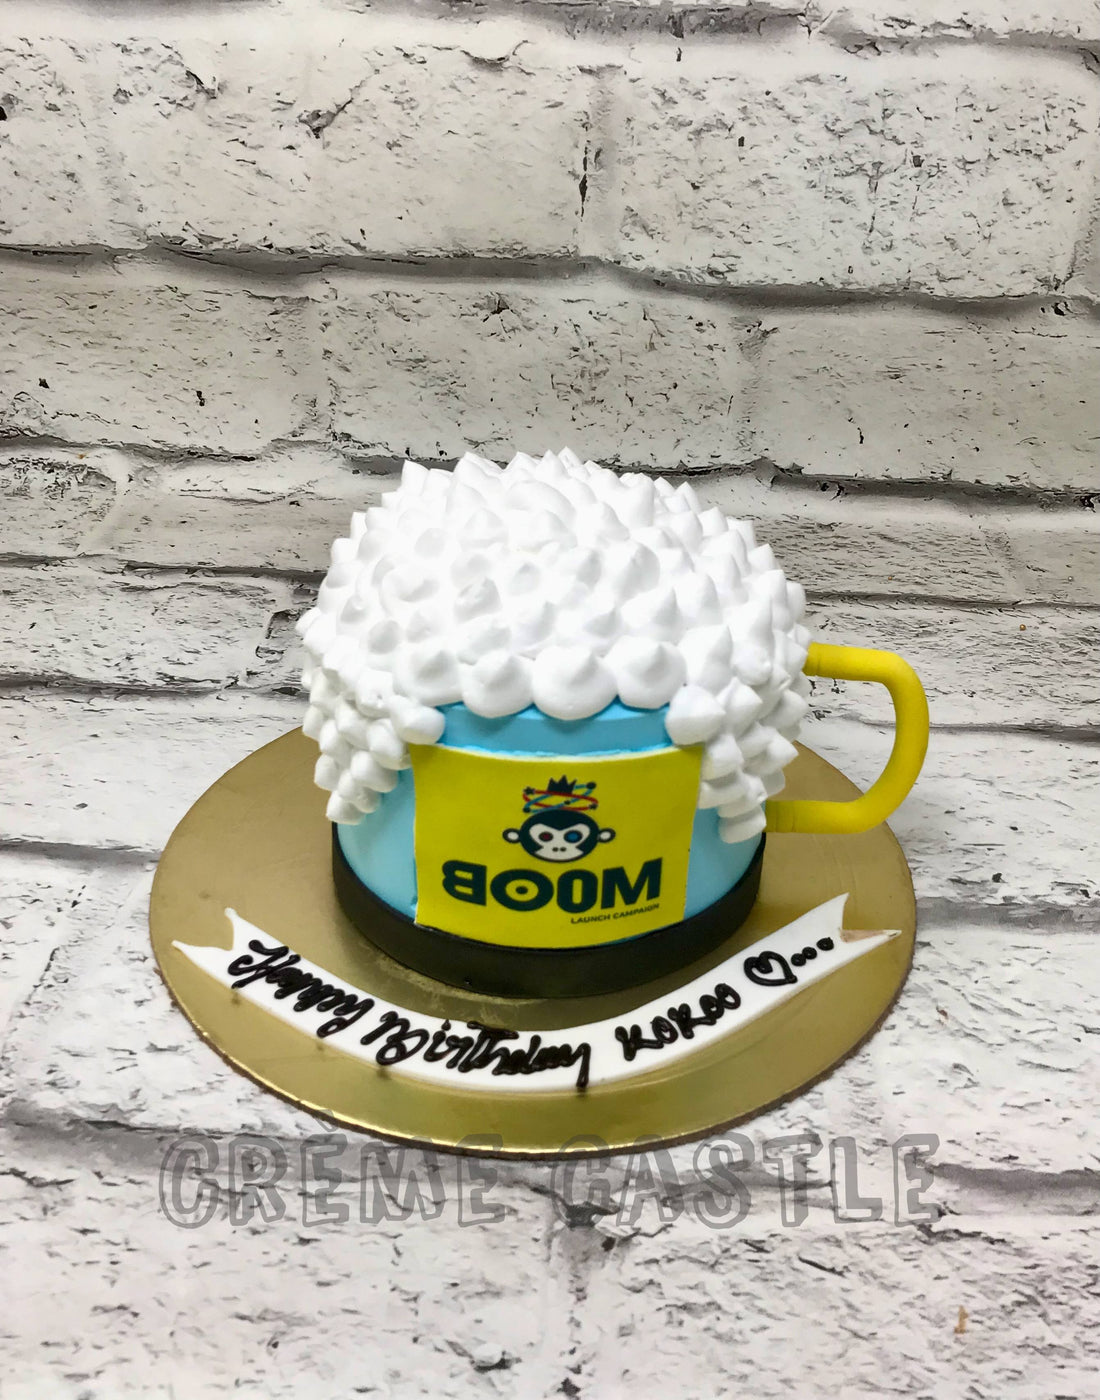 Bira Boom Cake